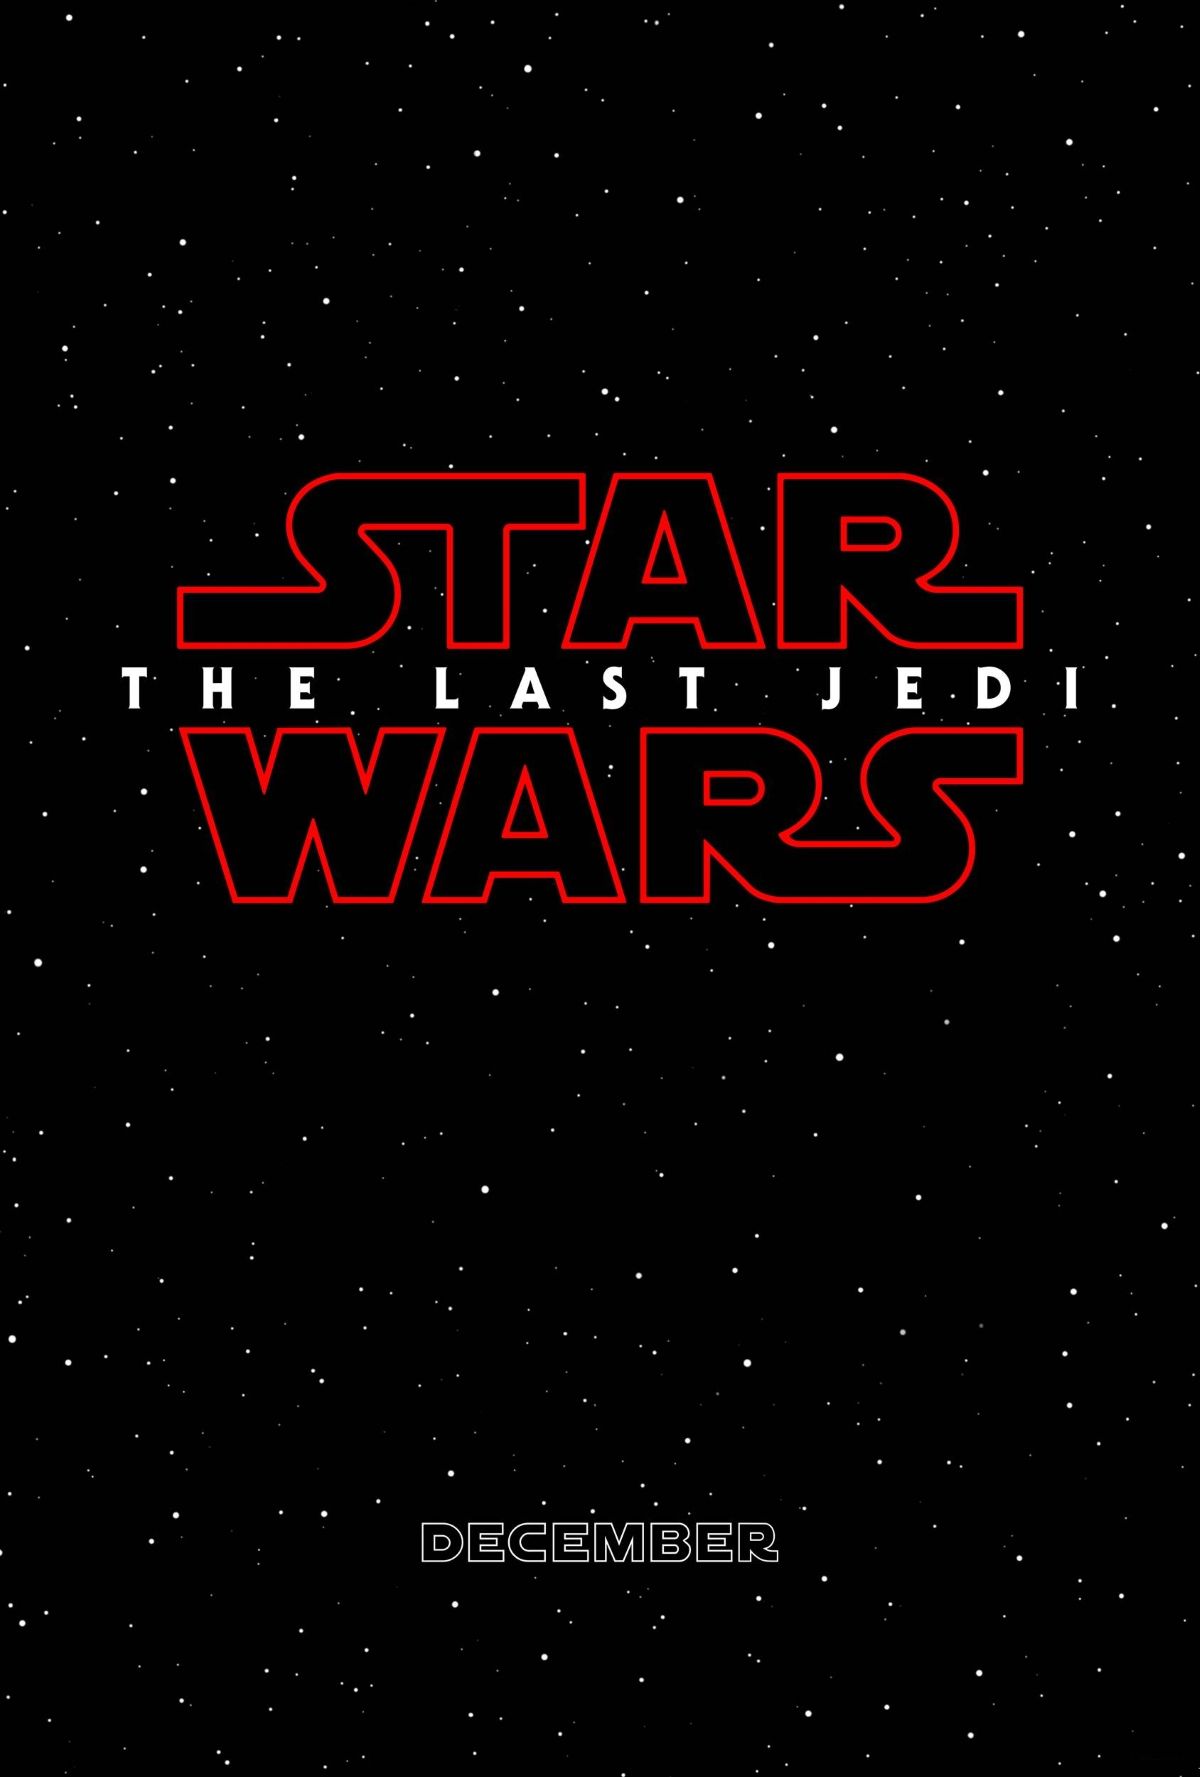 Star Wars 8 Last Jedi Poster